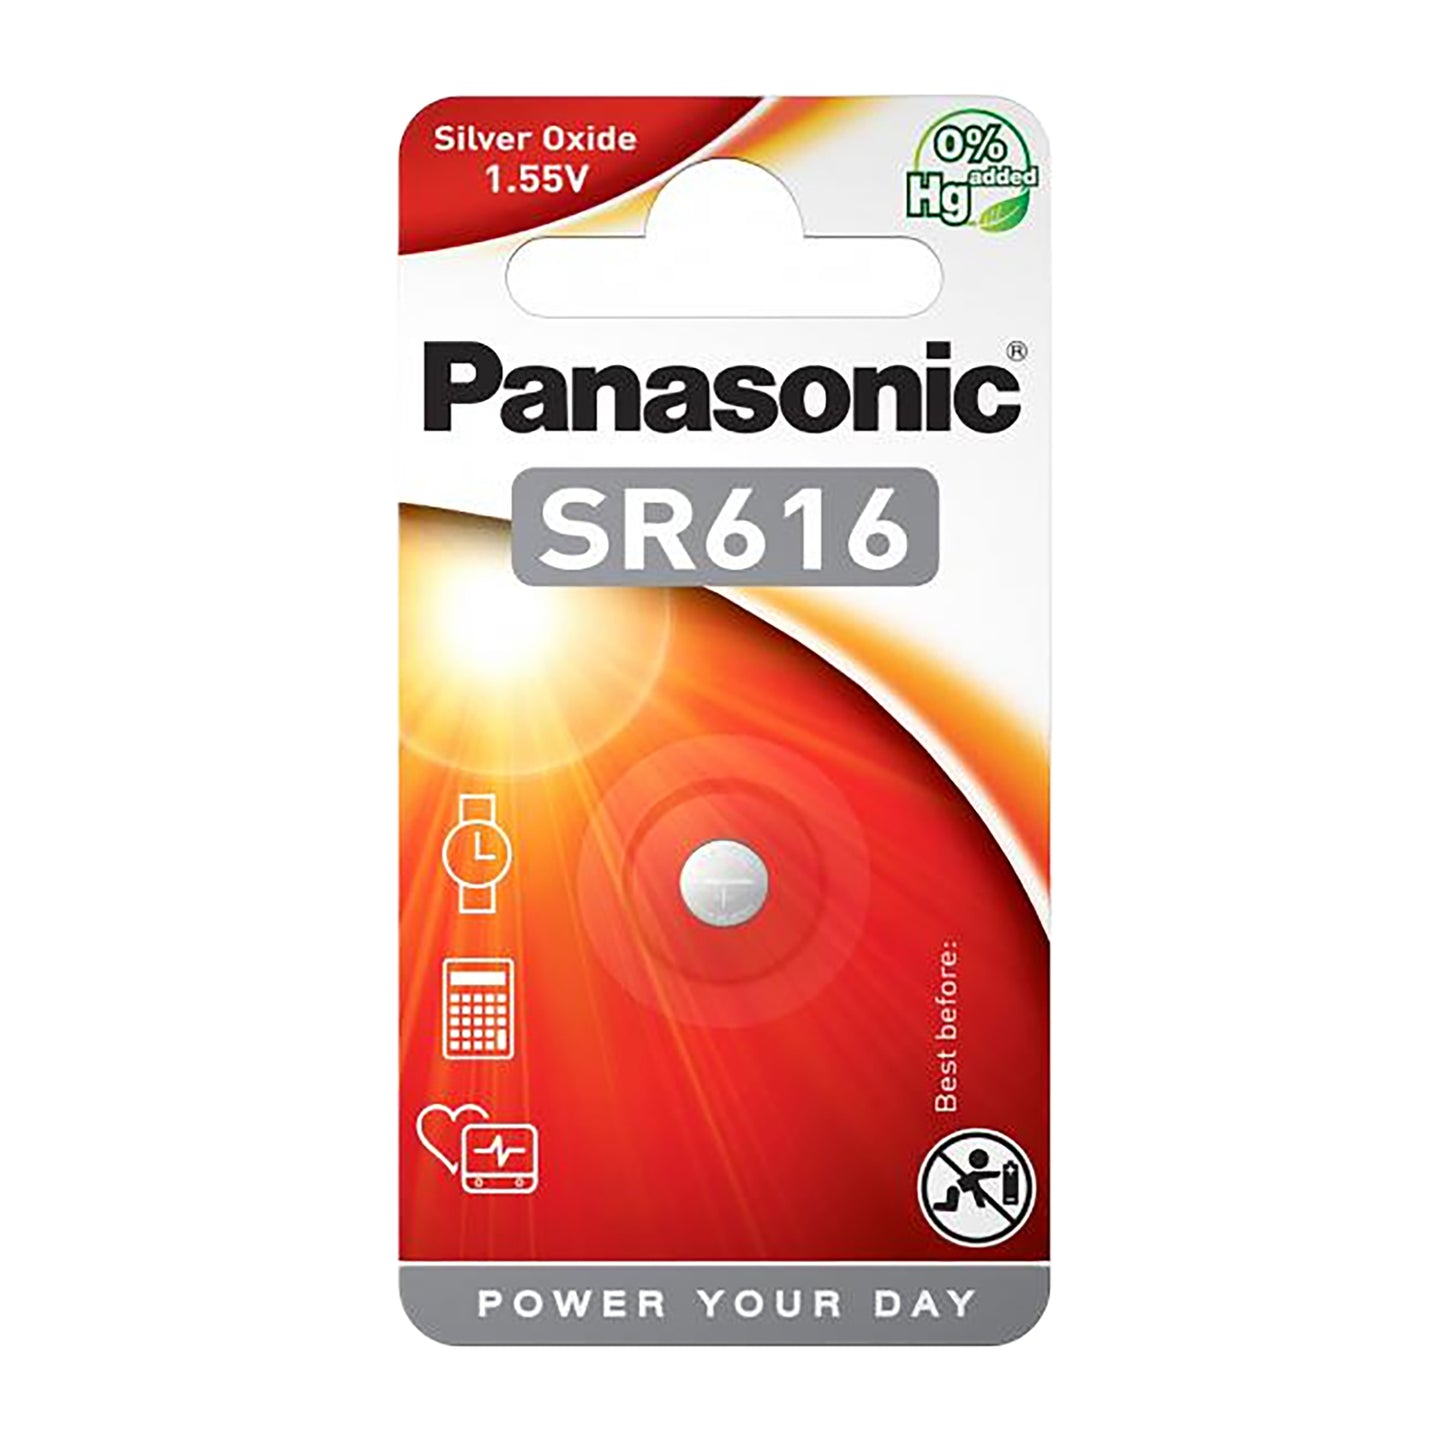 PAN-SR616-1 - дисковые батарейки, 1,55 В (оксид серебра) Panasonic SR616 (1 шт. в упаковке)